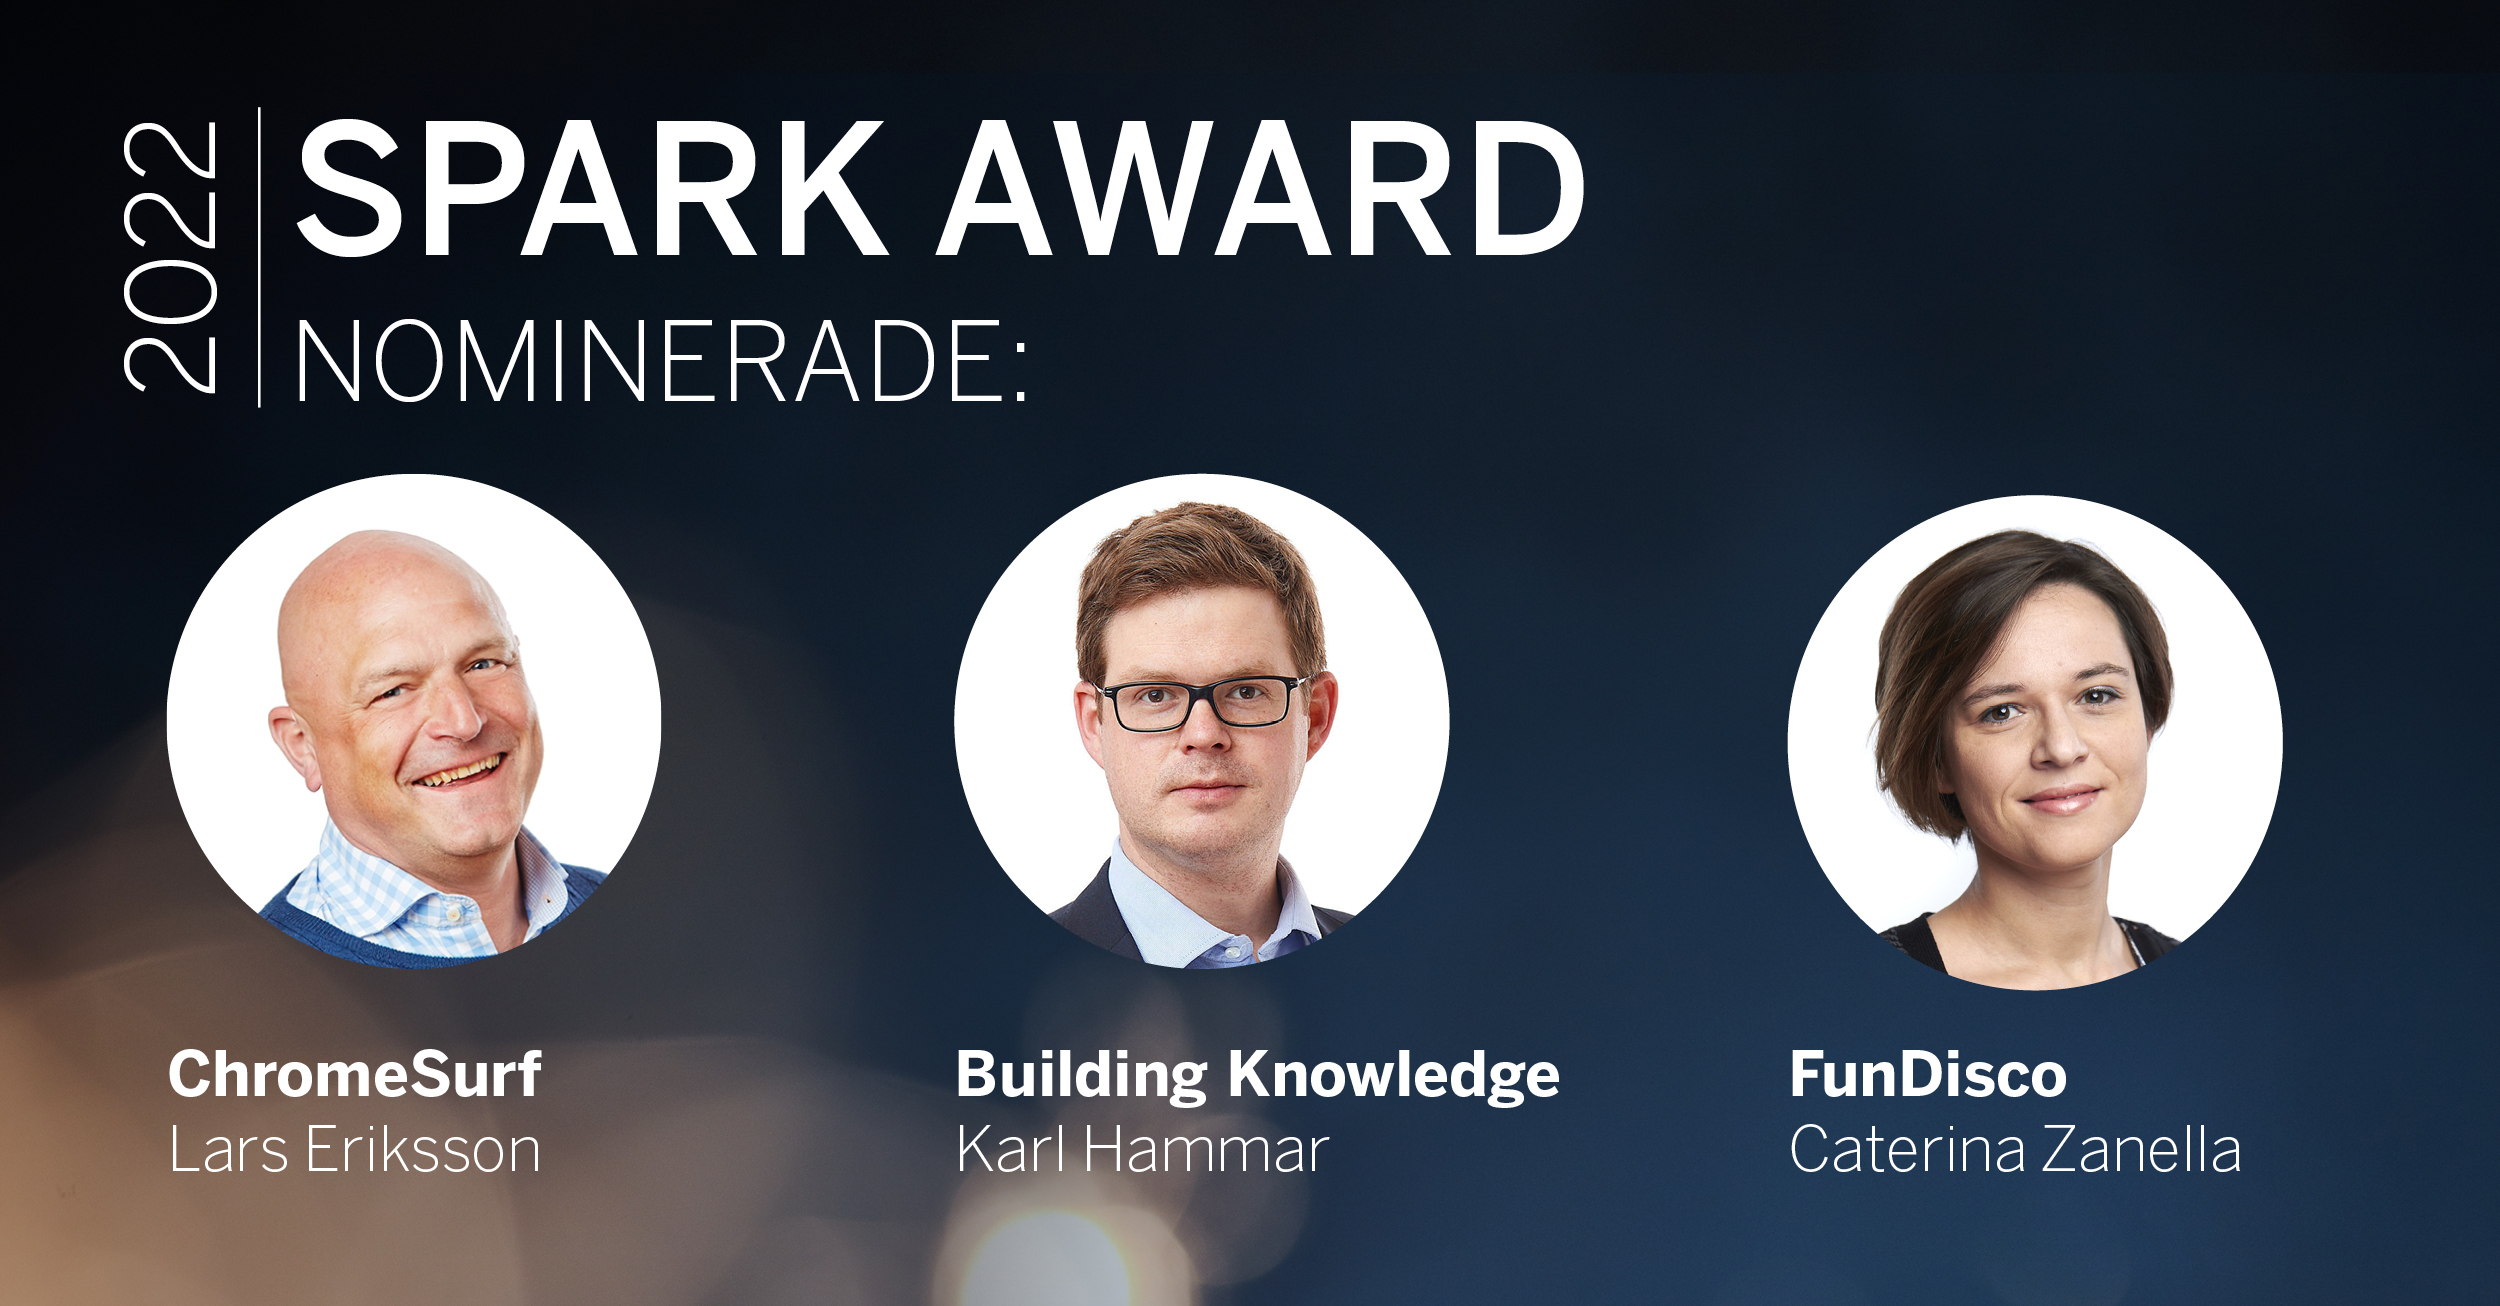 De nominerade till SPARK Award är Lars Eriksson, Karl Hammar och Caterina Zanella.